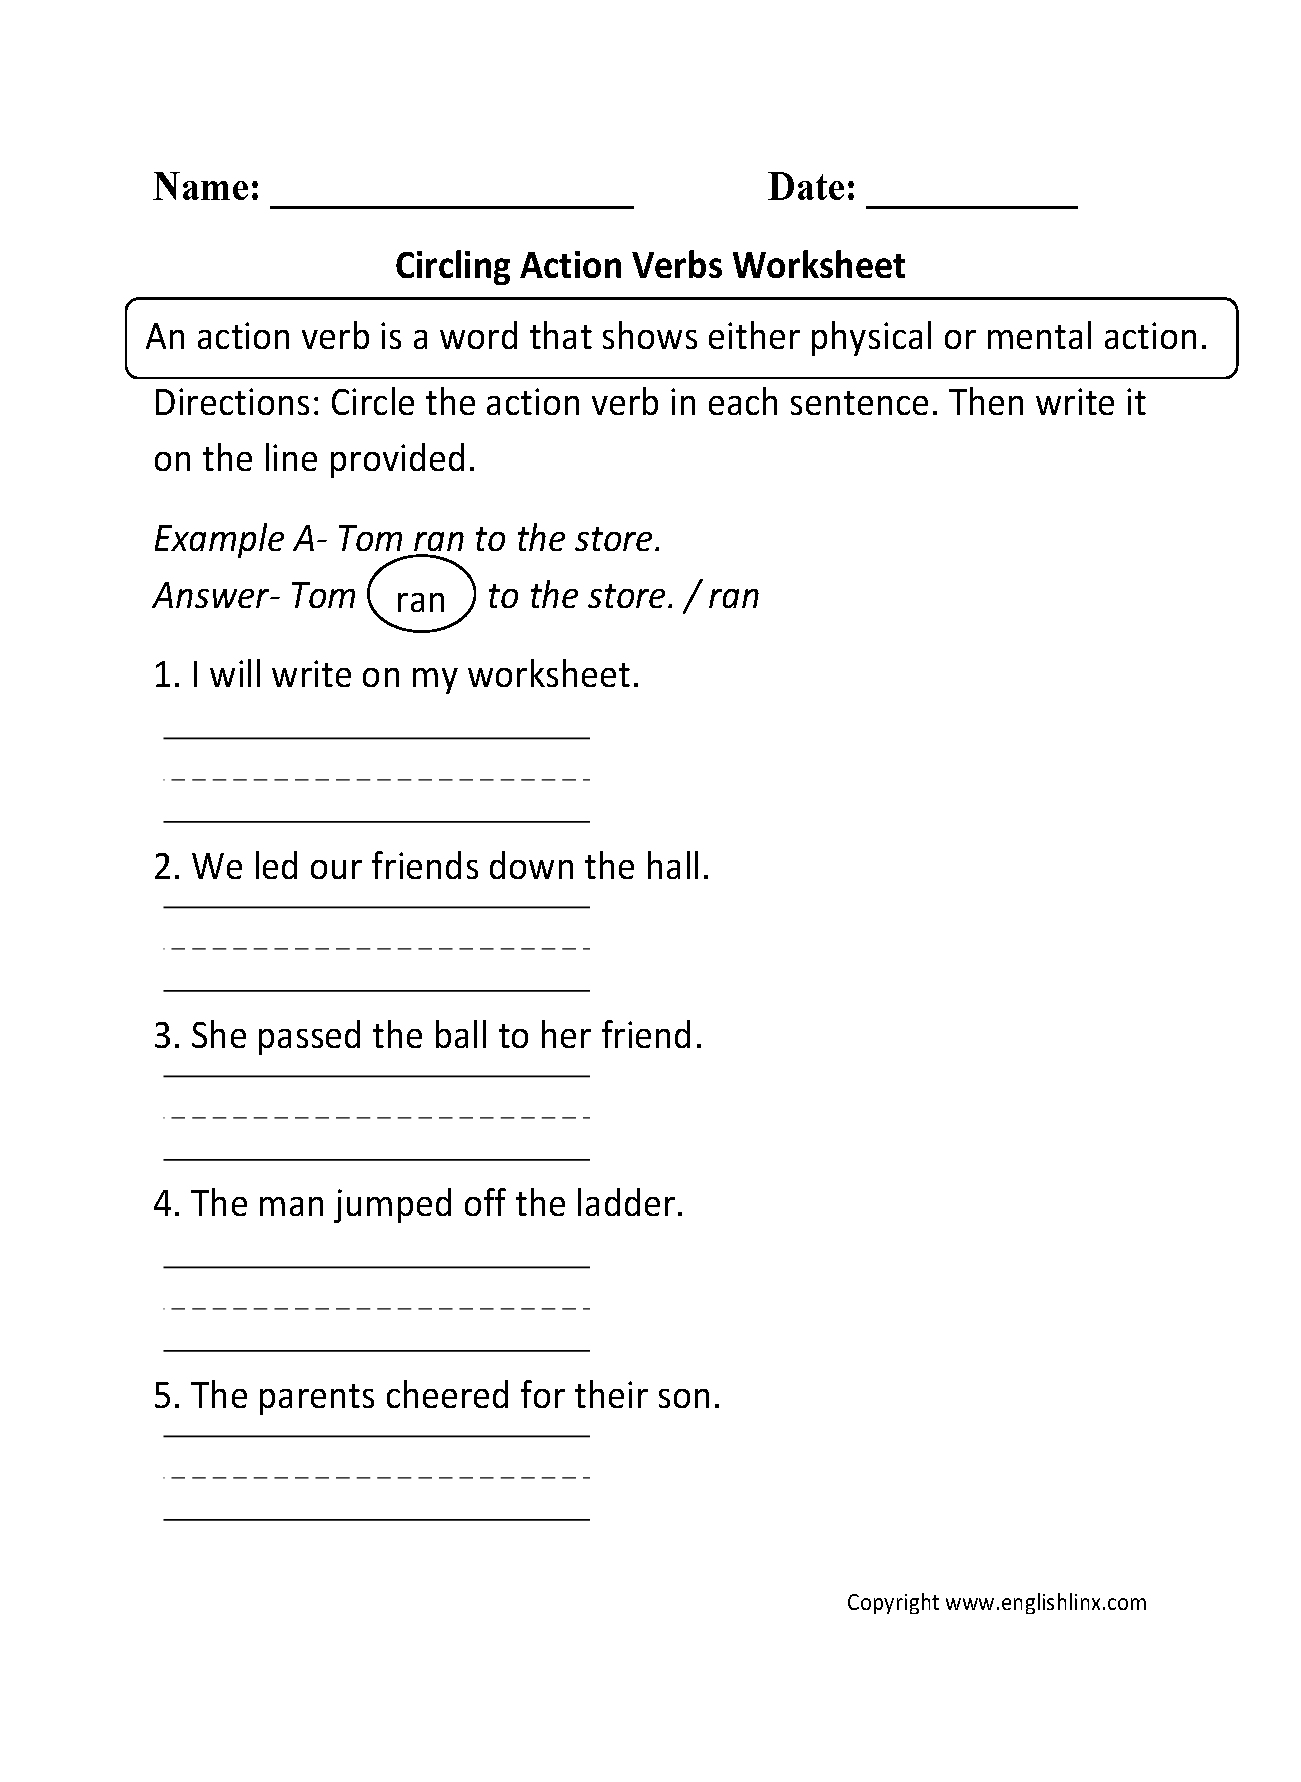 Mental Action Verbs Worksheet